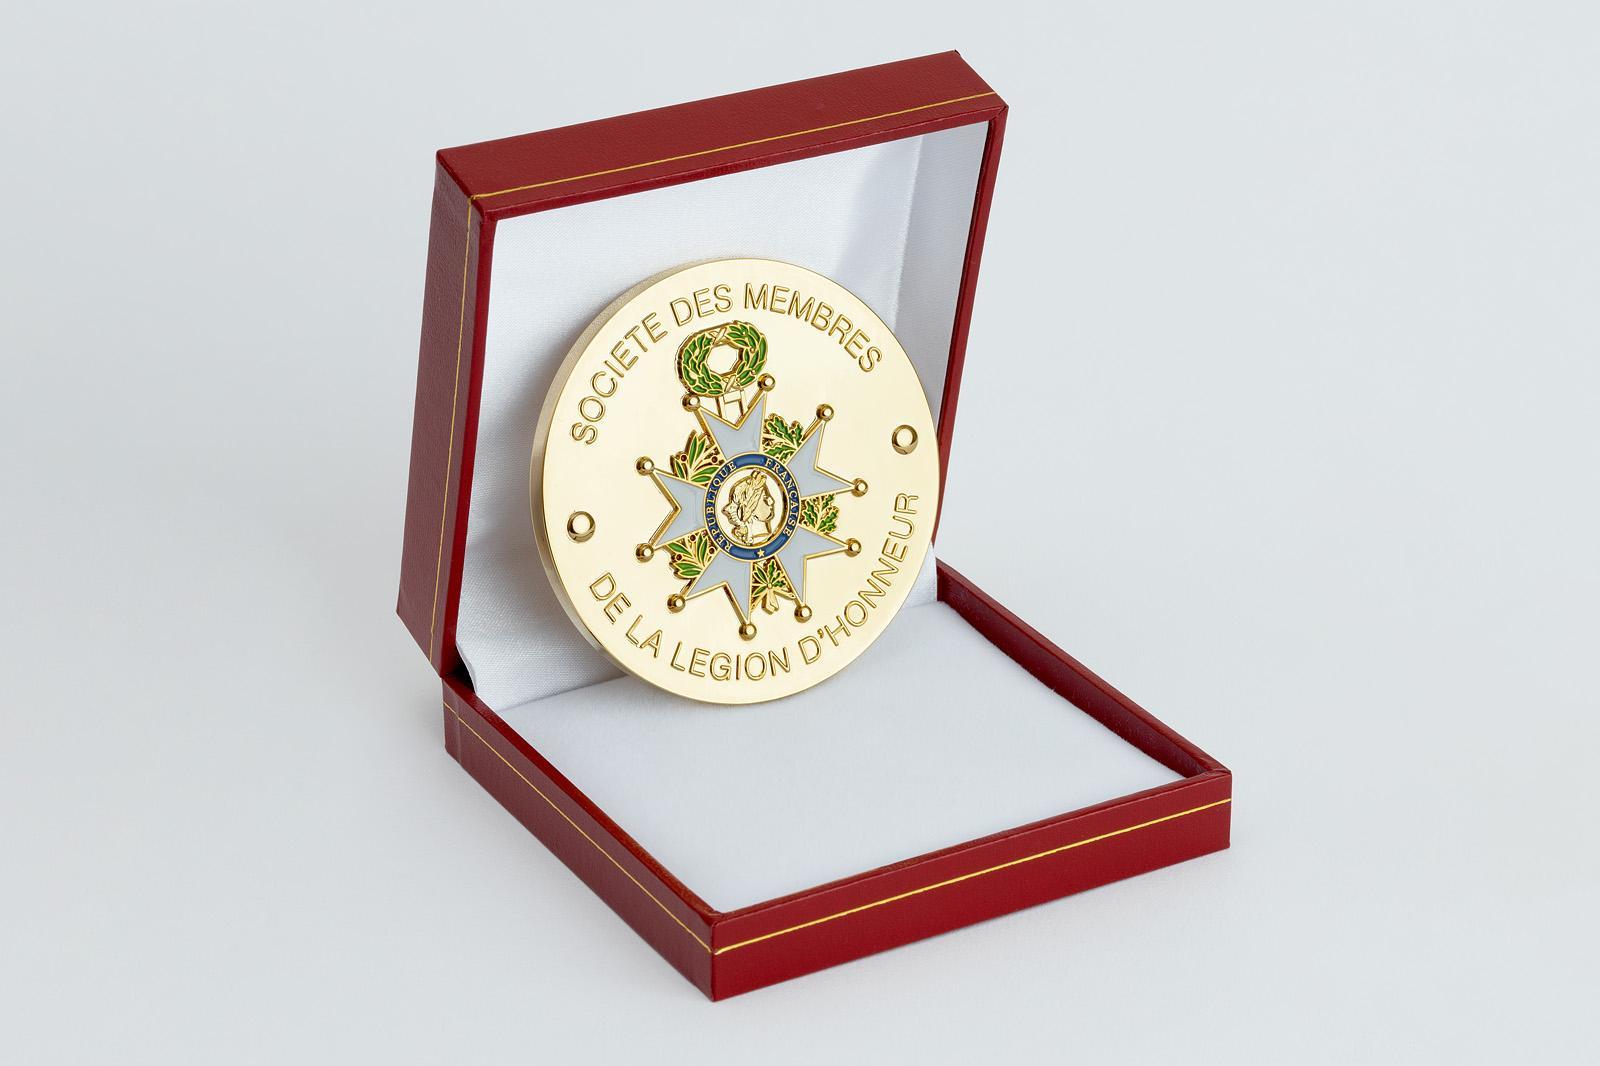 Société des membres de la Légion d'honneur - Accueil